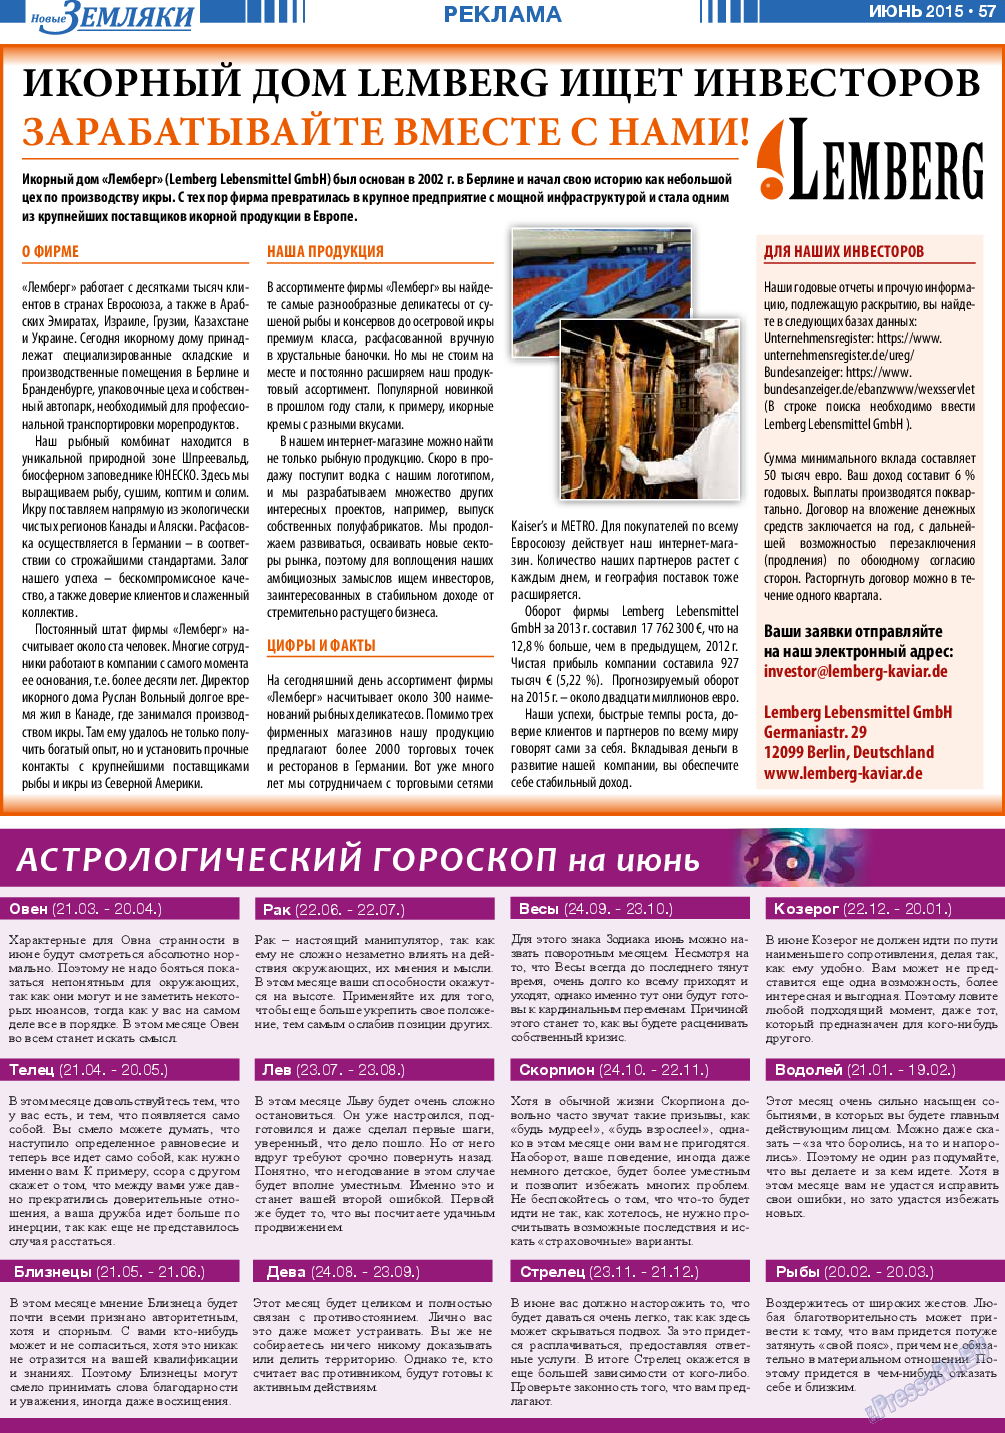 Новые Земляки, газета. 2015 №6 стр.57